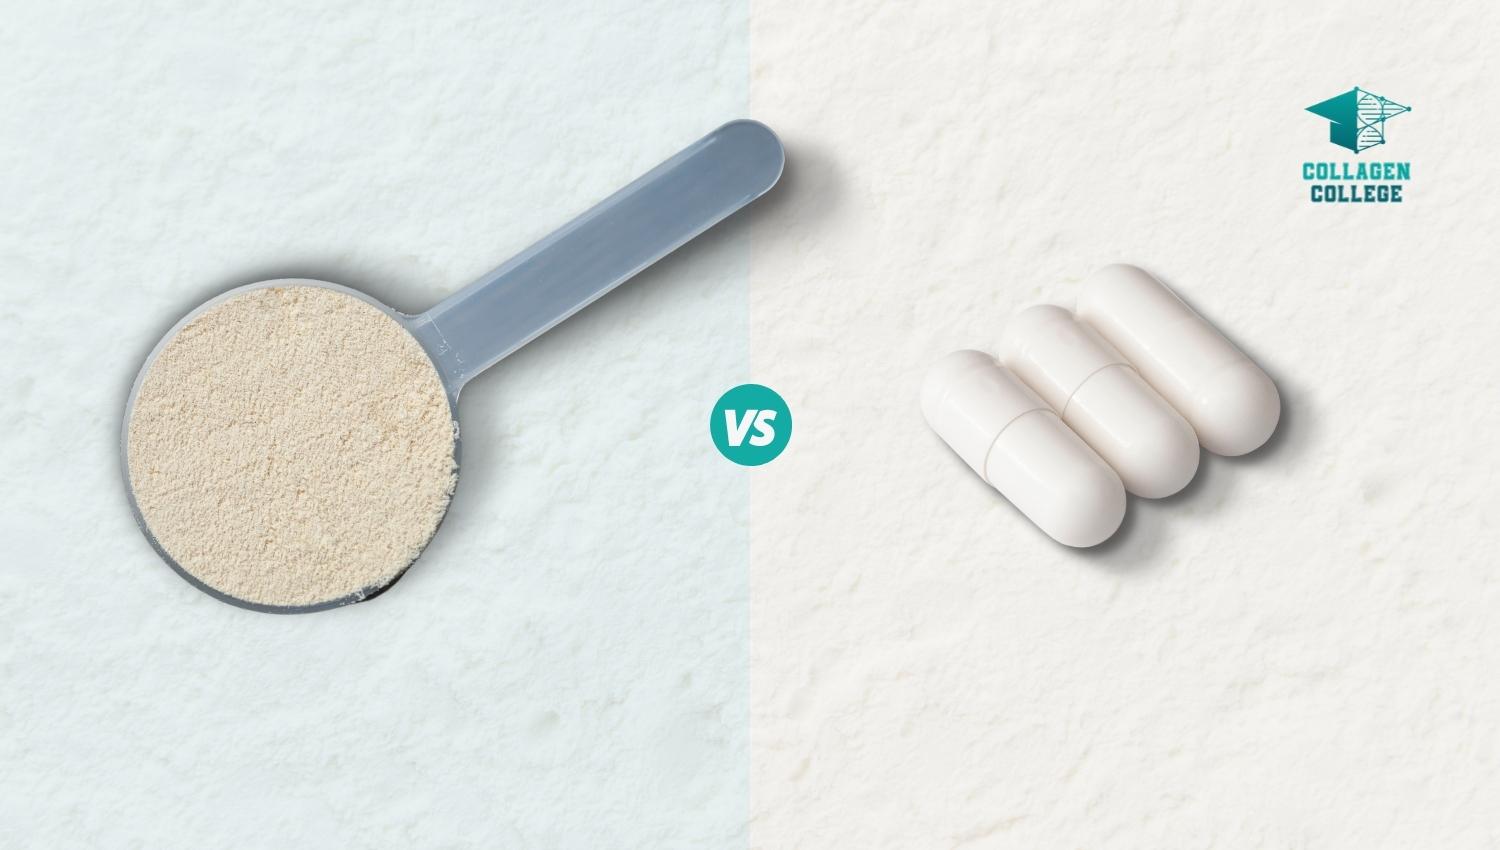 Collagen powder vs pills comparison guide